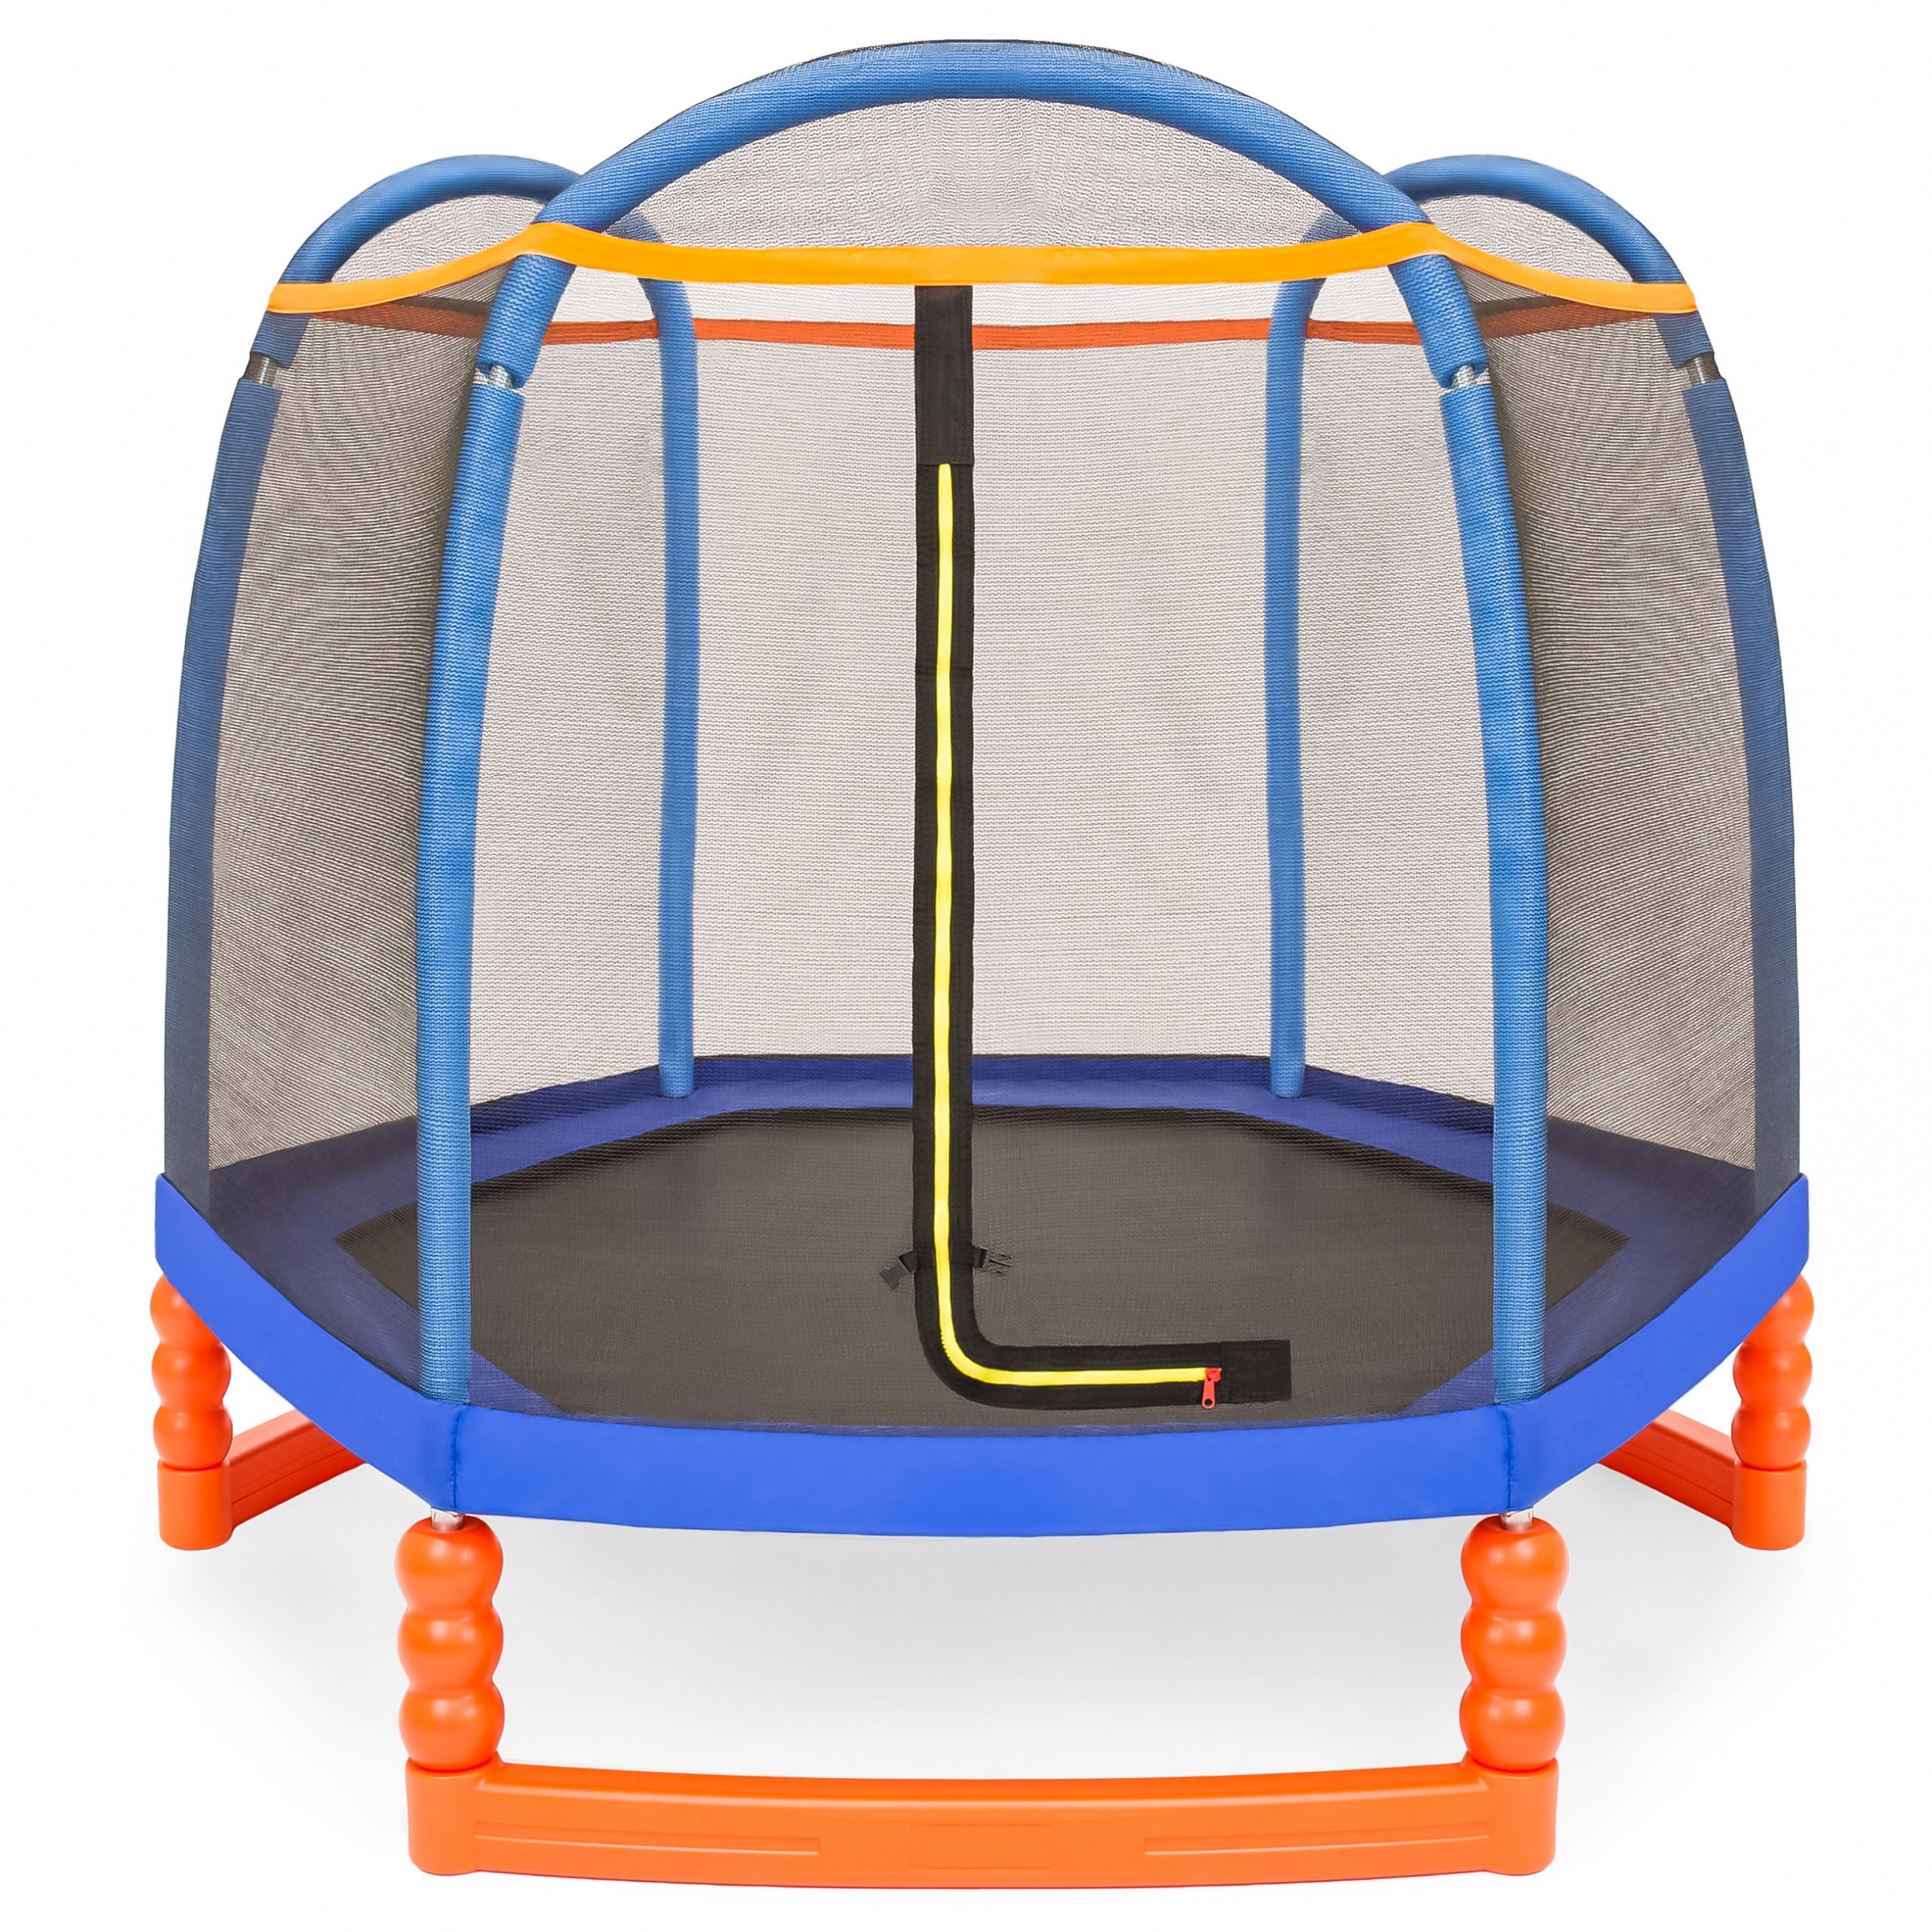 Indoor Kids Trampoline
 BCP 7ft Kids Indoor Outdoor Mini Trampoline w Safety Net